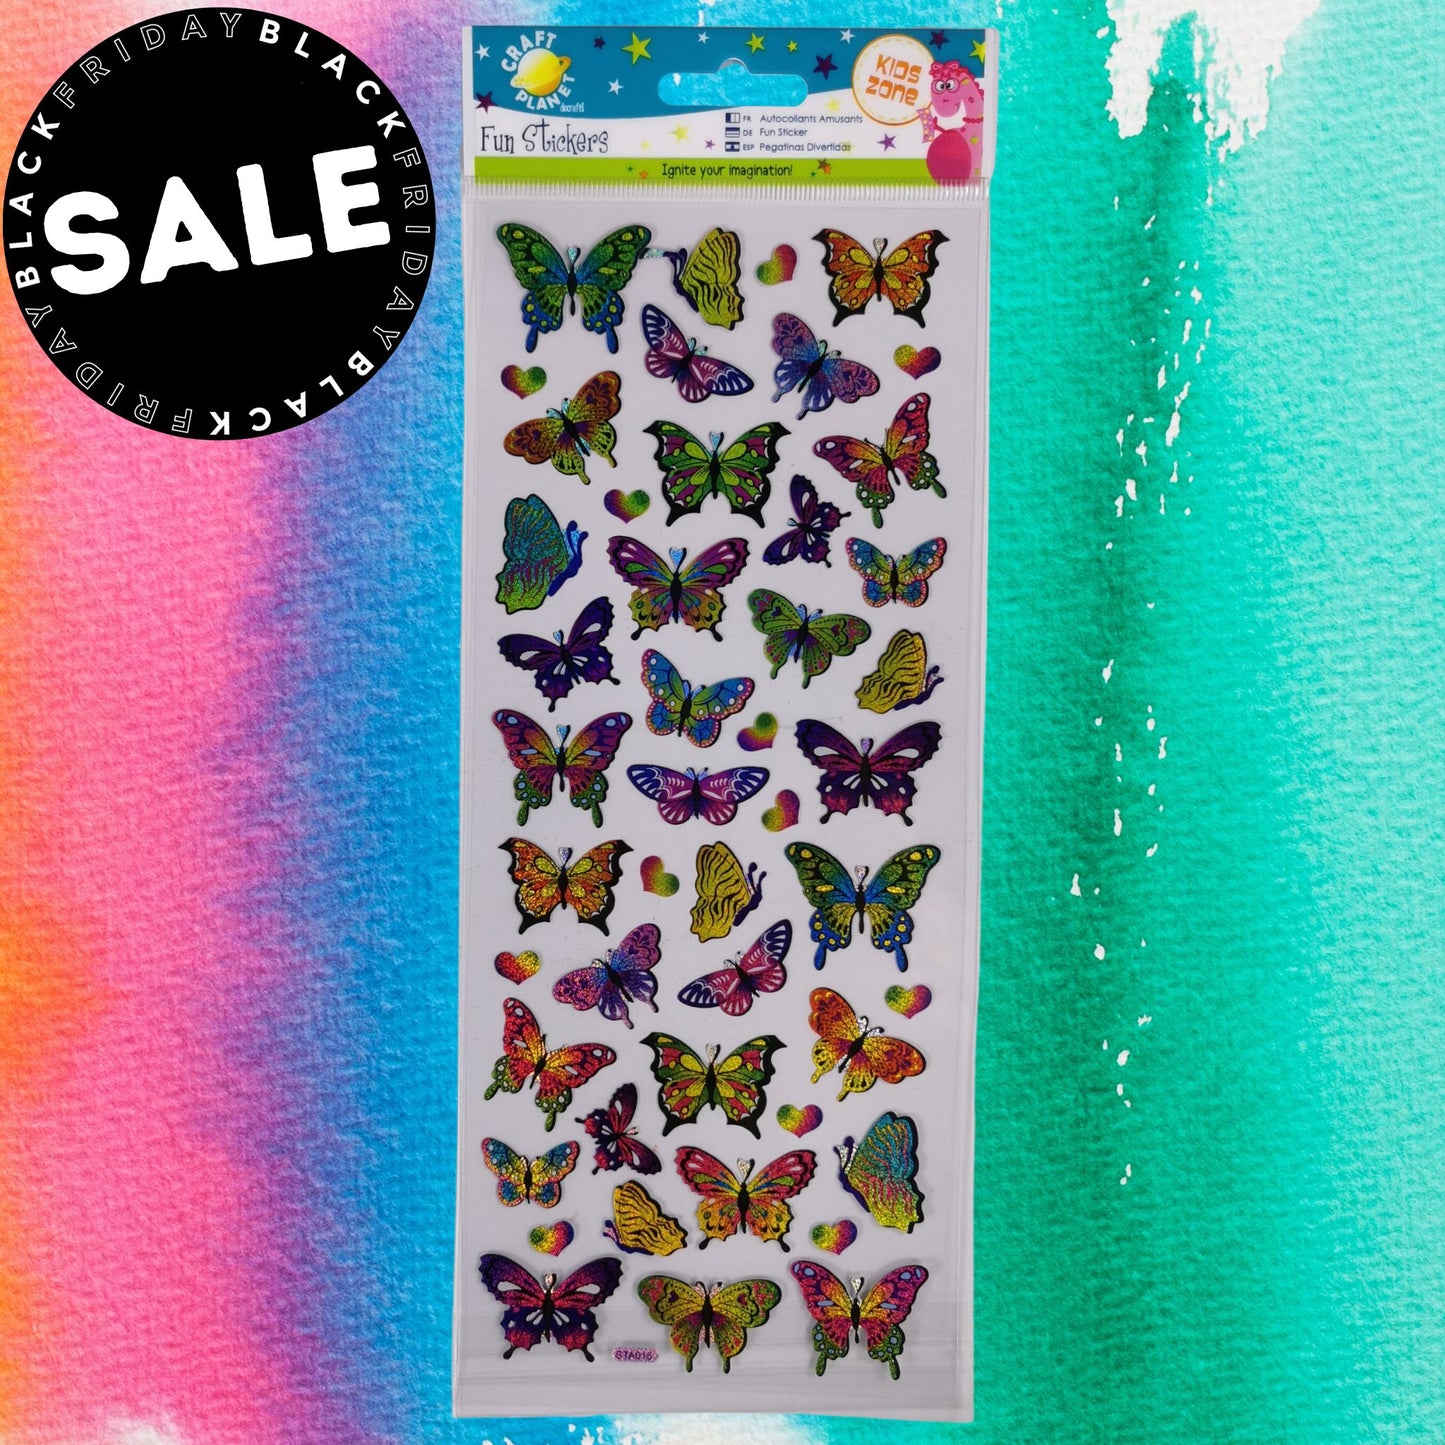 Fun Stickers - Butterflies